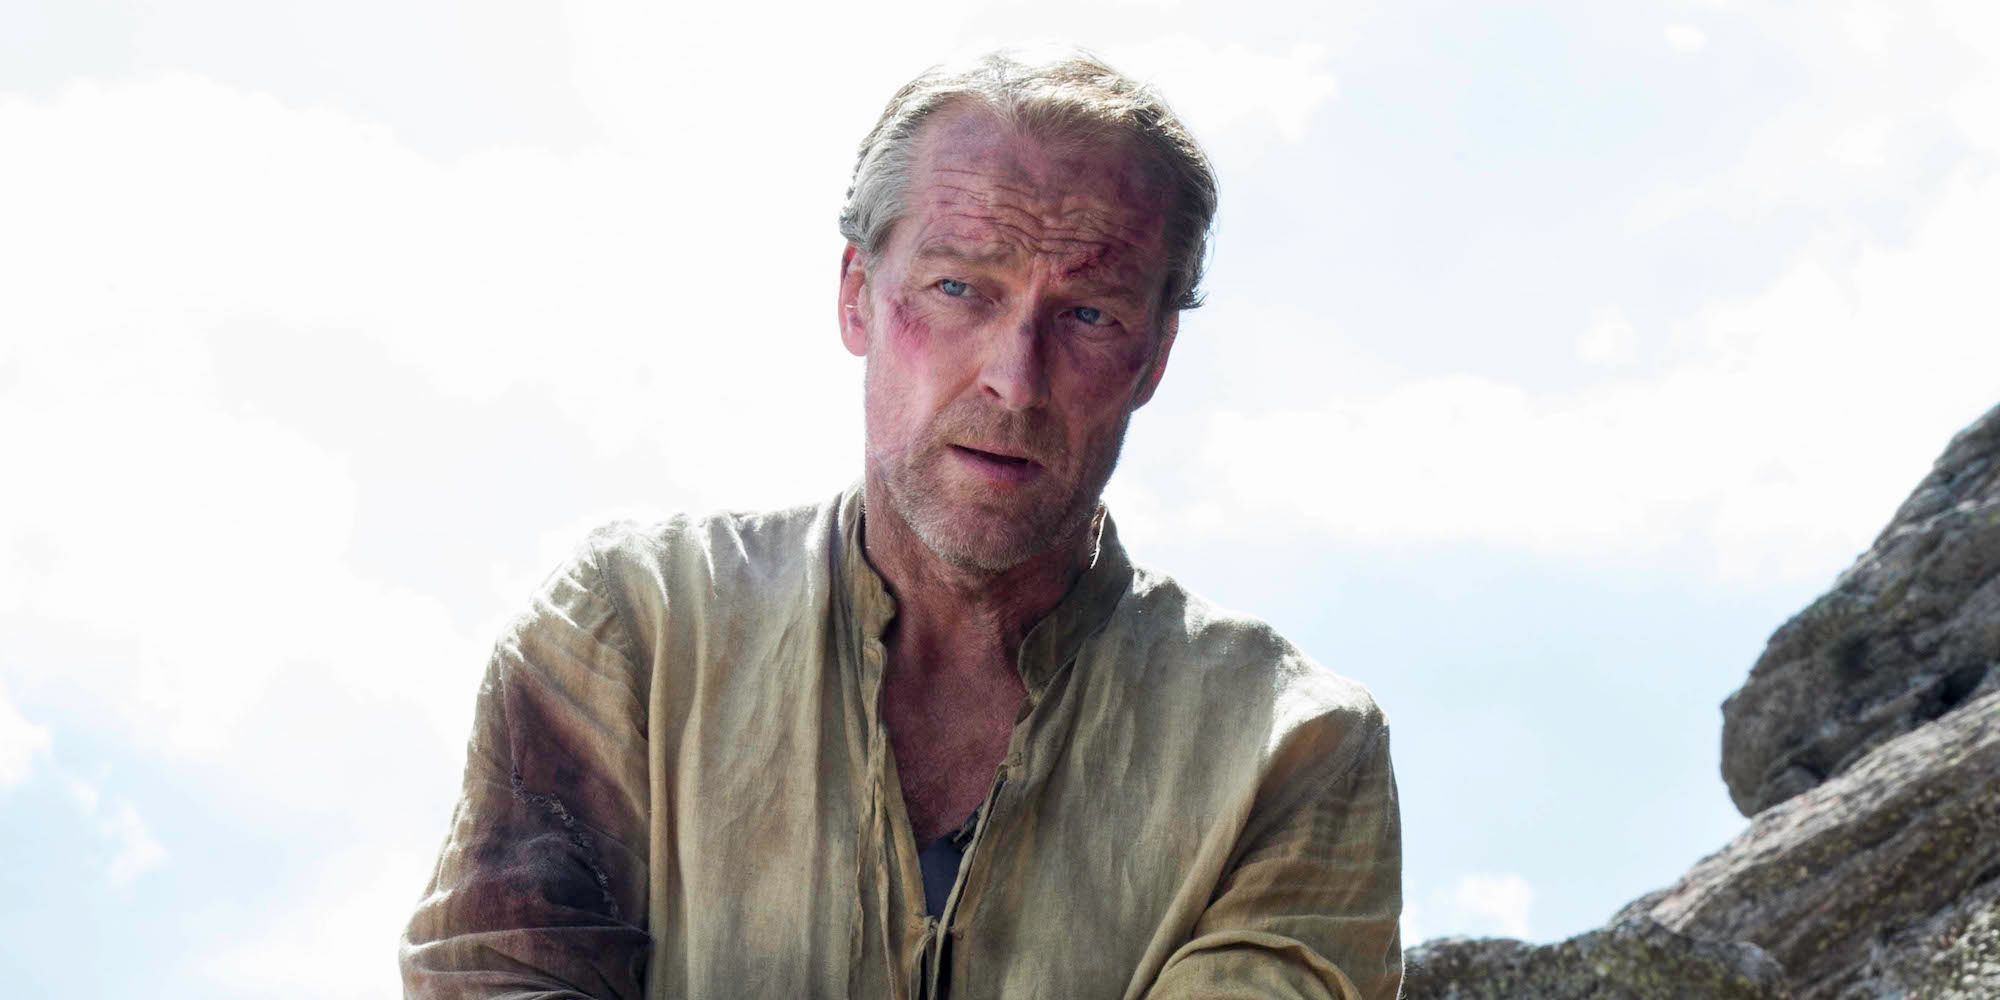 Jorah Mormont reveals he has greyscale in Game of Thrones